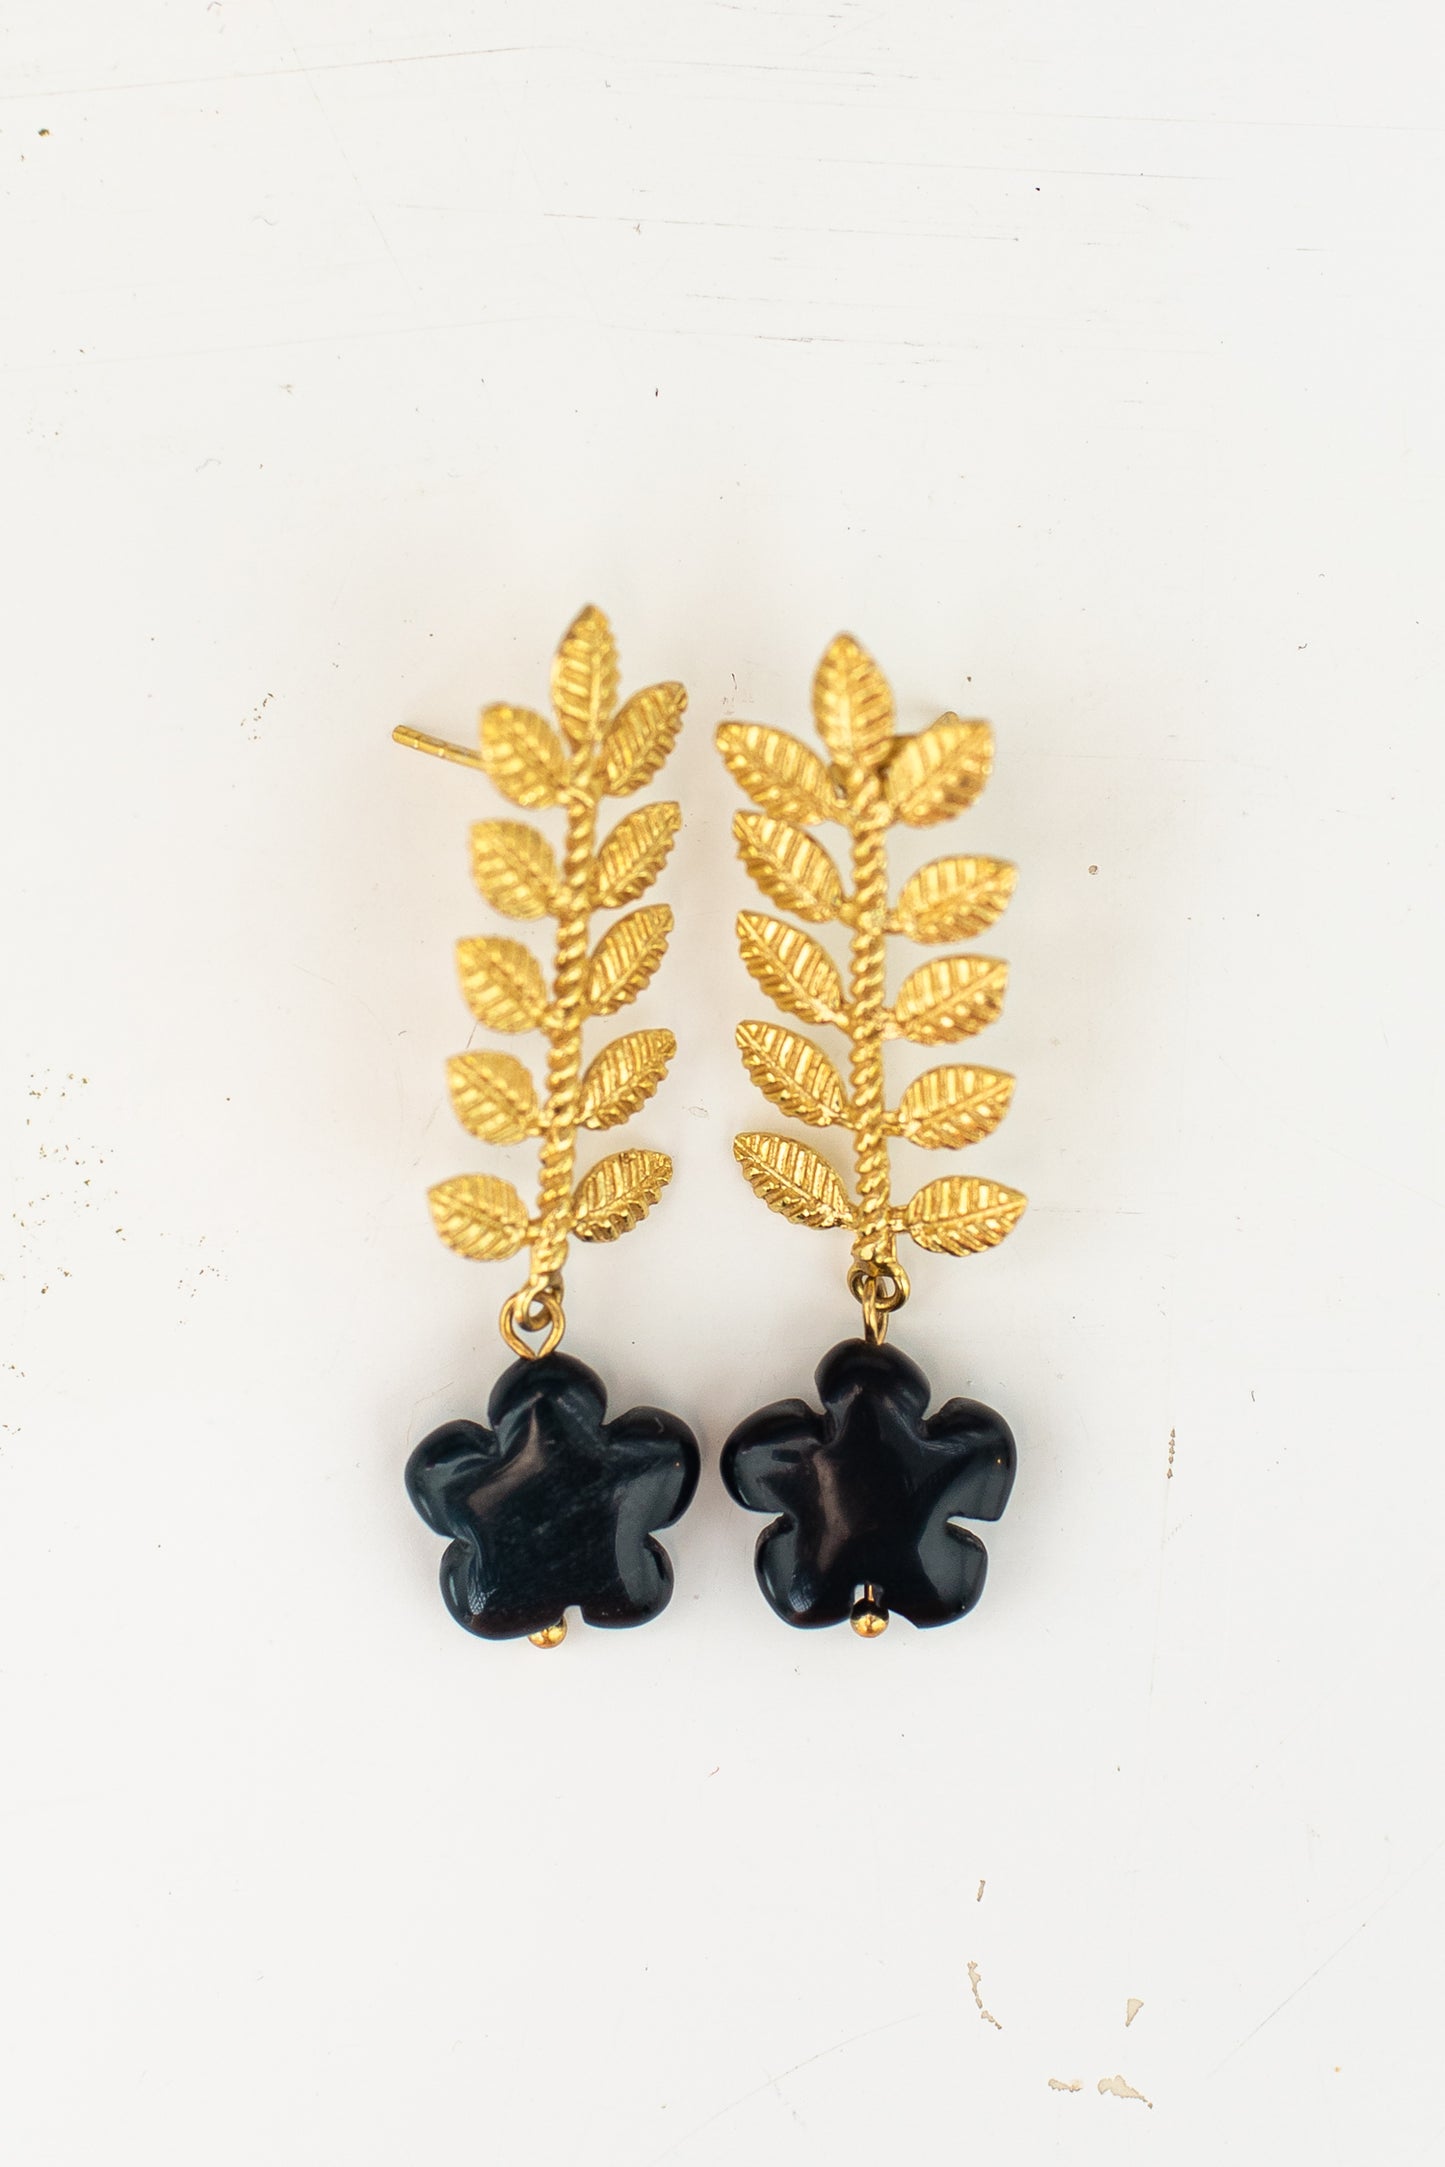 Bloom Earrings with black daisies